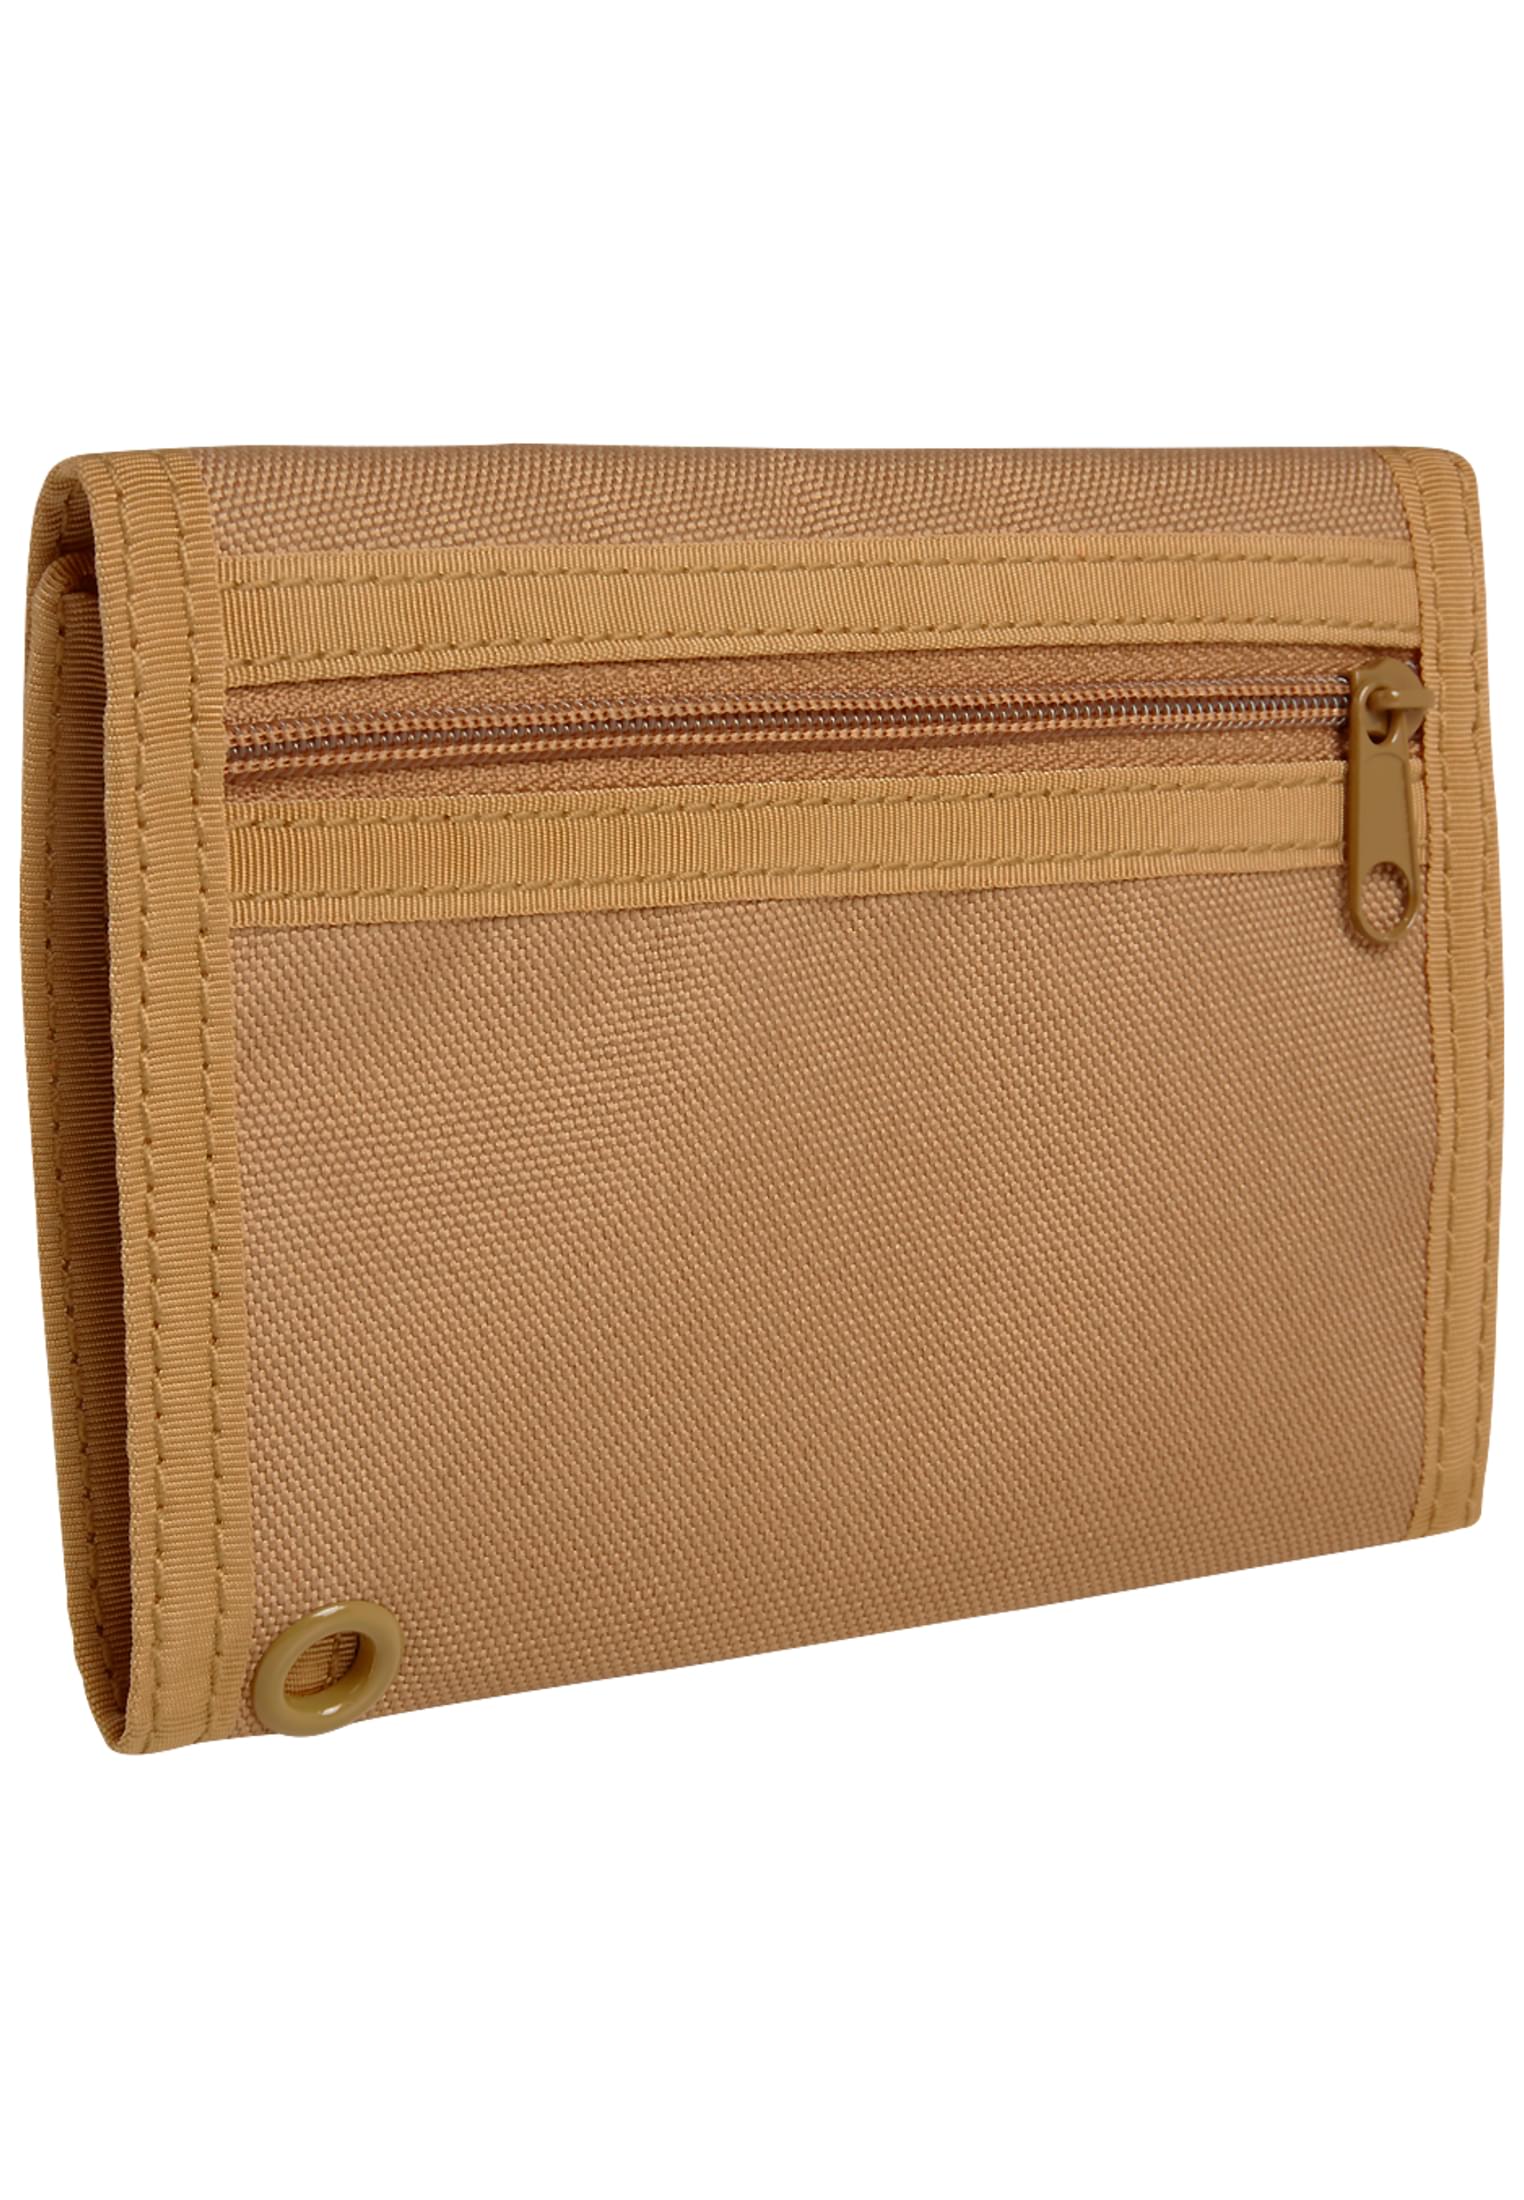 Taschen Wallet Three in Farbe camel